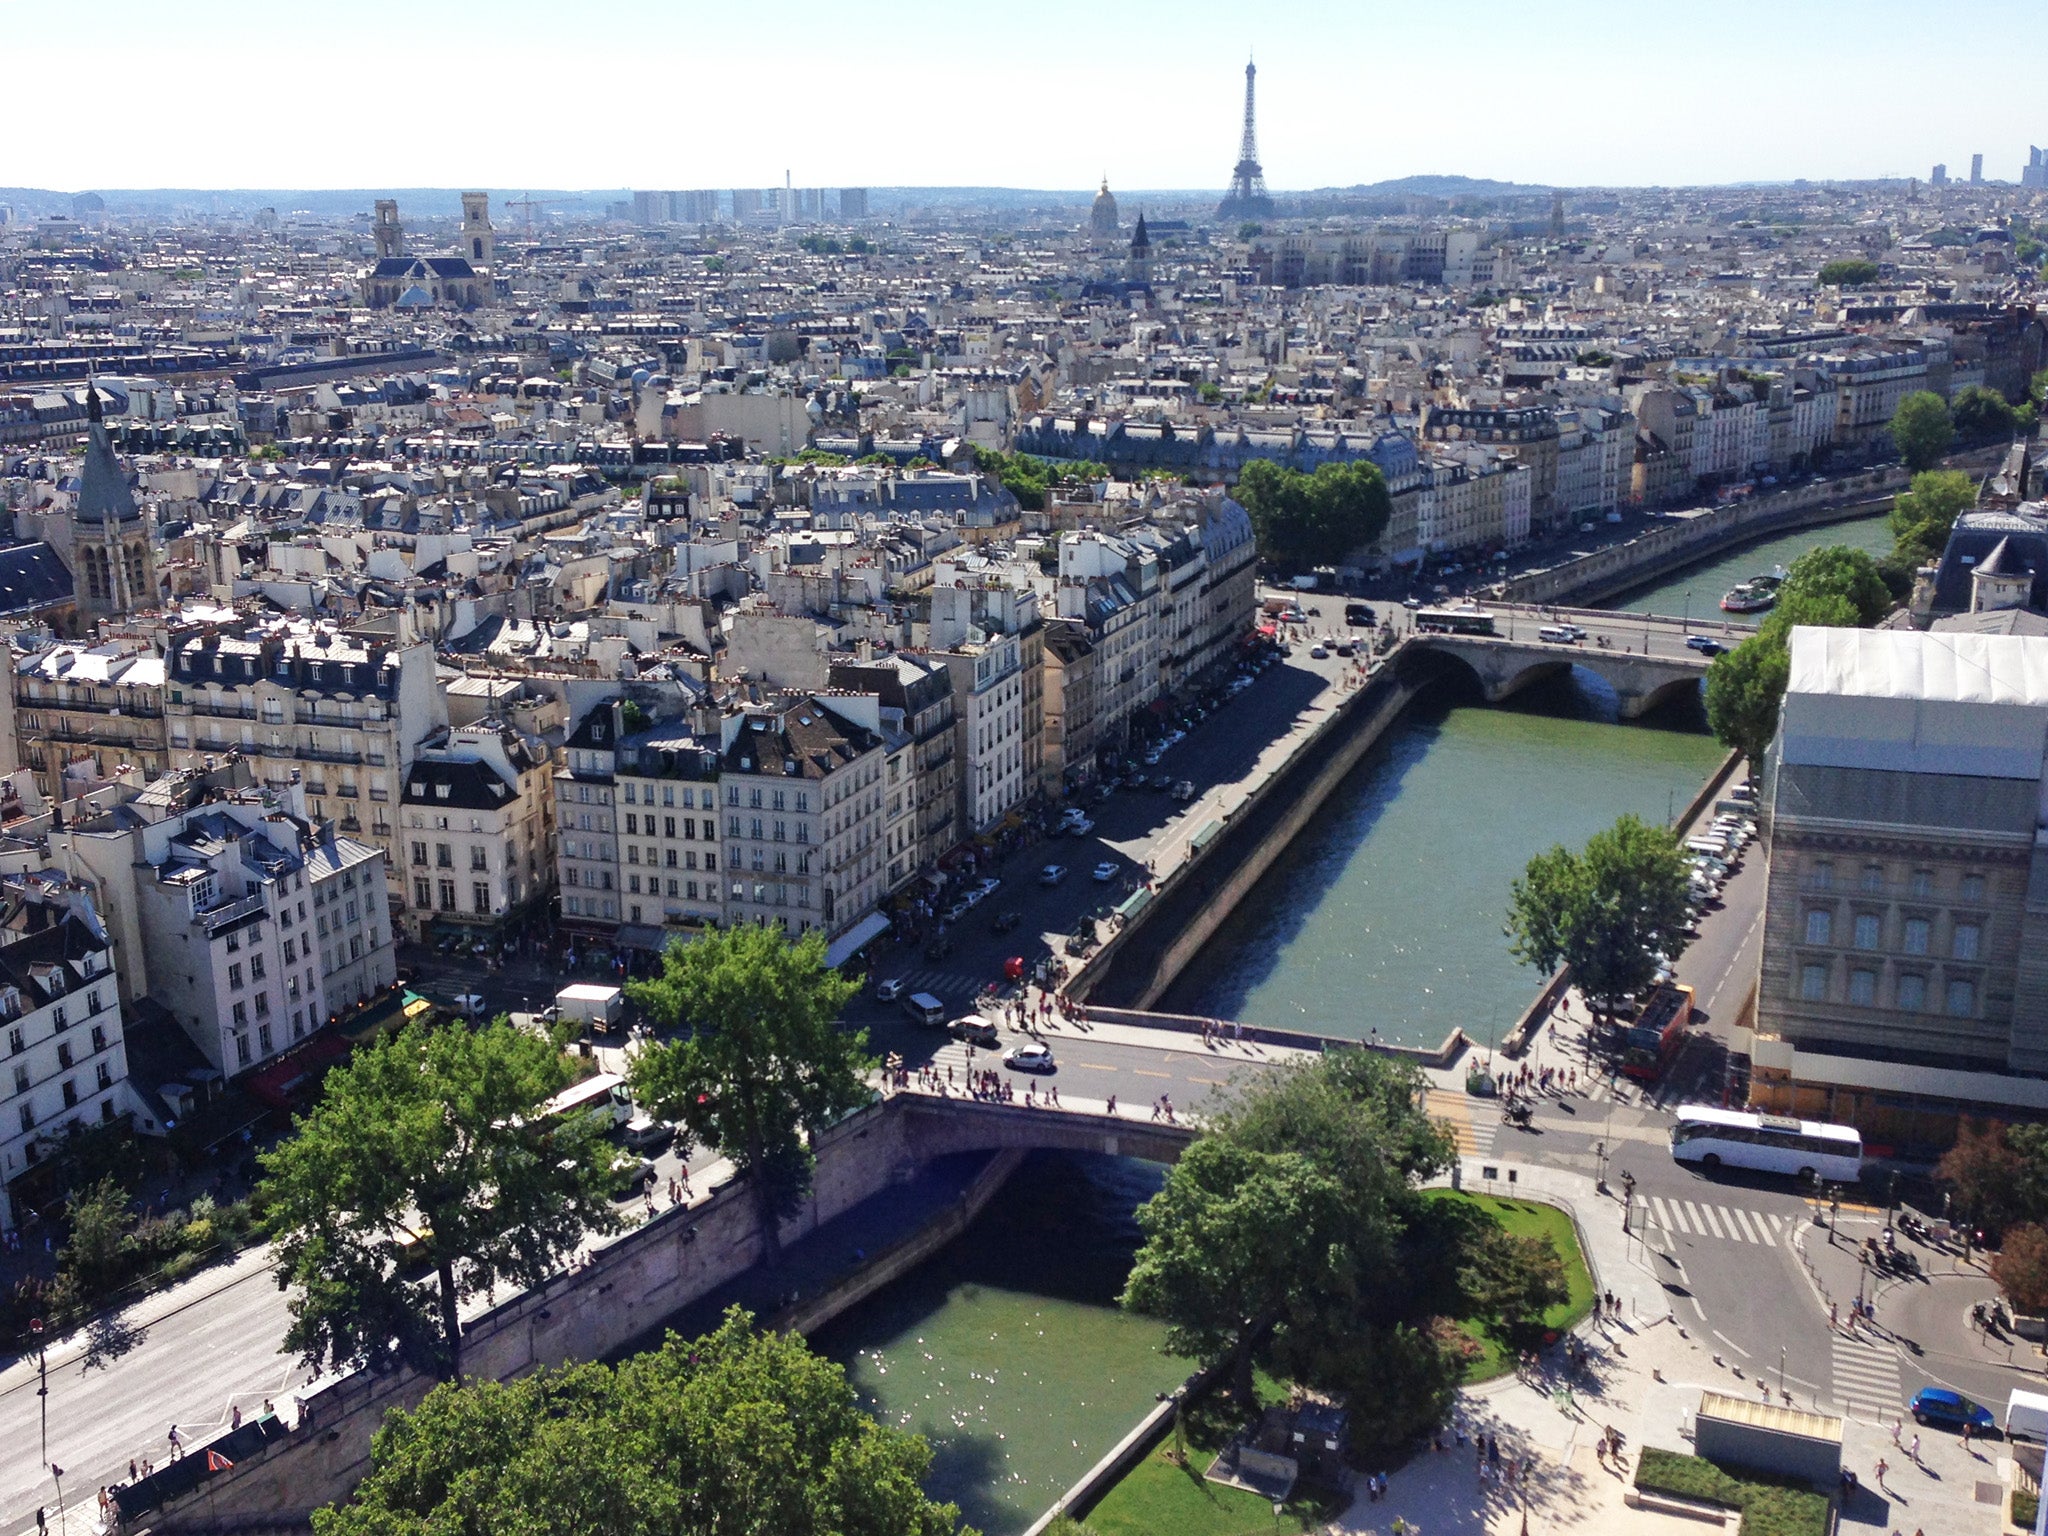 The Seine slices through Paris